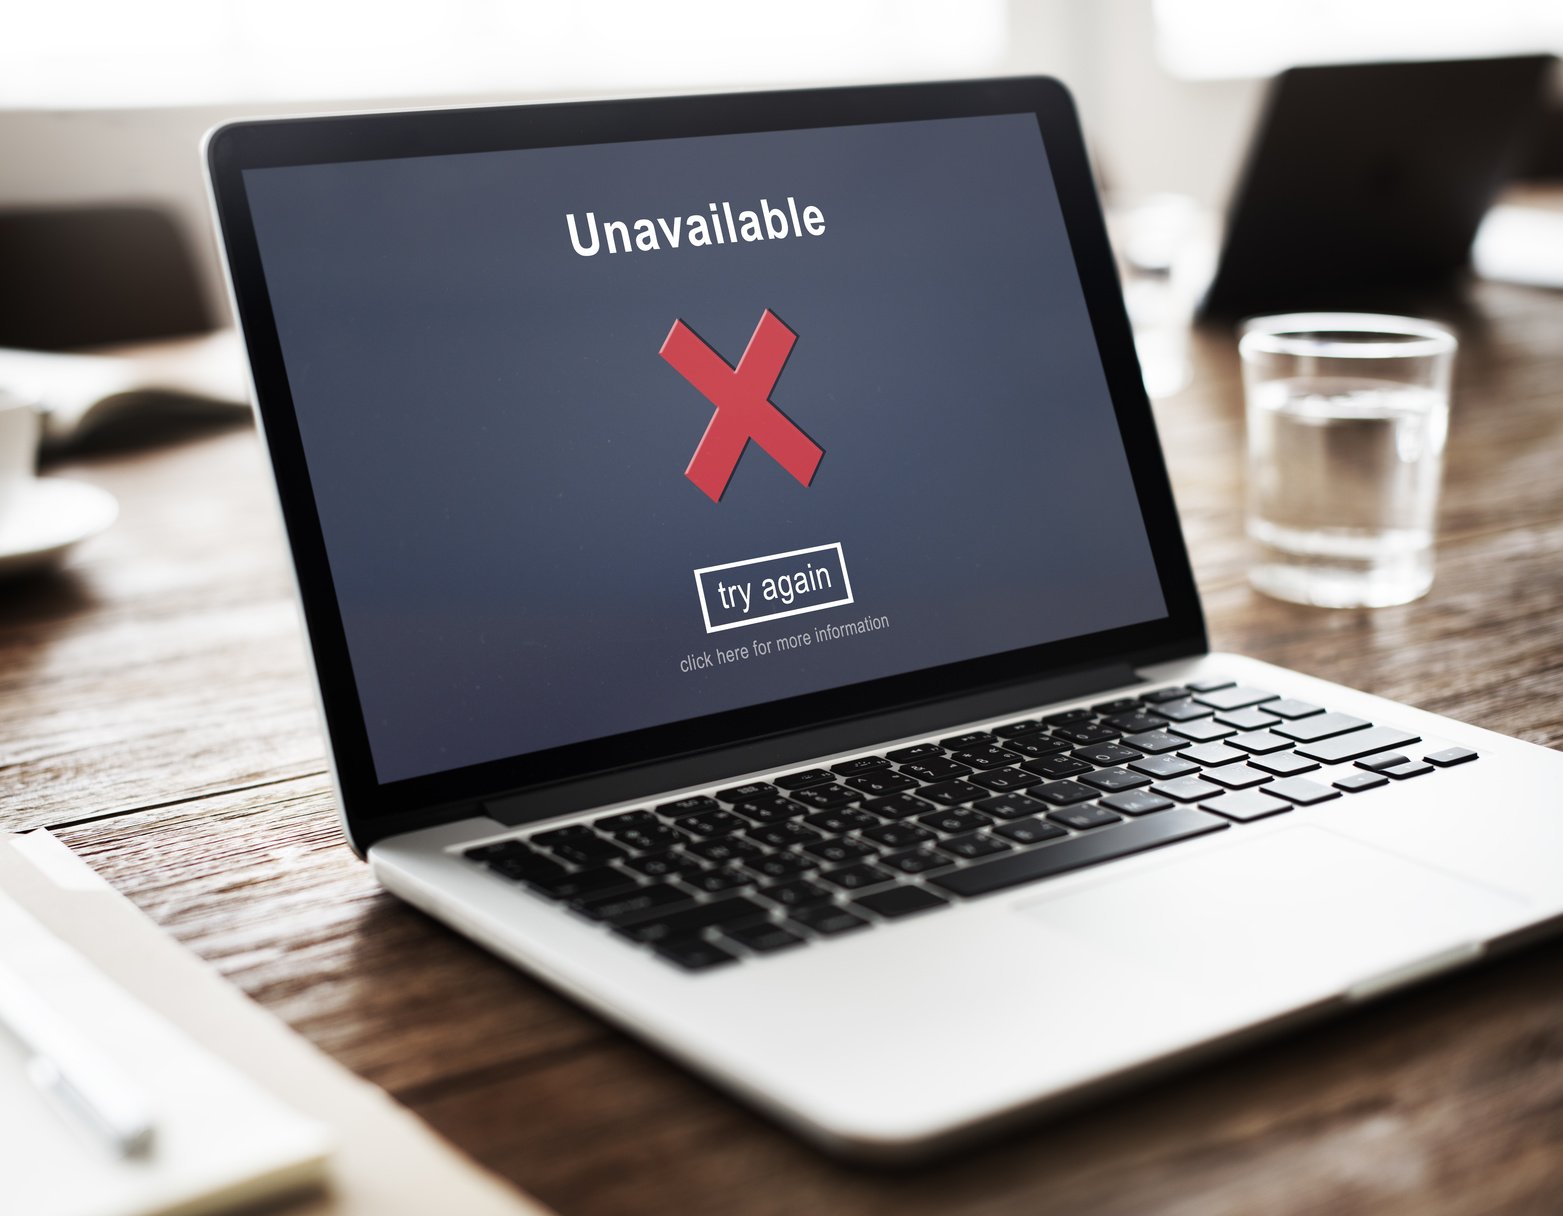 ΑΑΔΕ: Προσωρινά εκτός λειτουργίας η Προσωποποιημένη Πληροφόρηση και οι ρυθμίσεις στο myTAXISnet